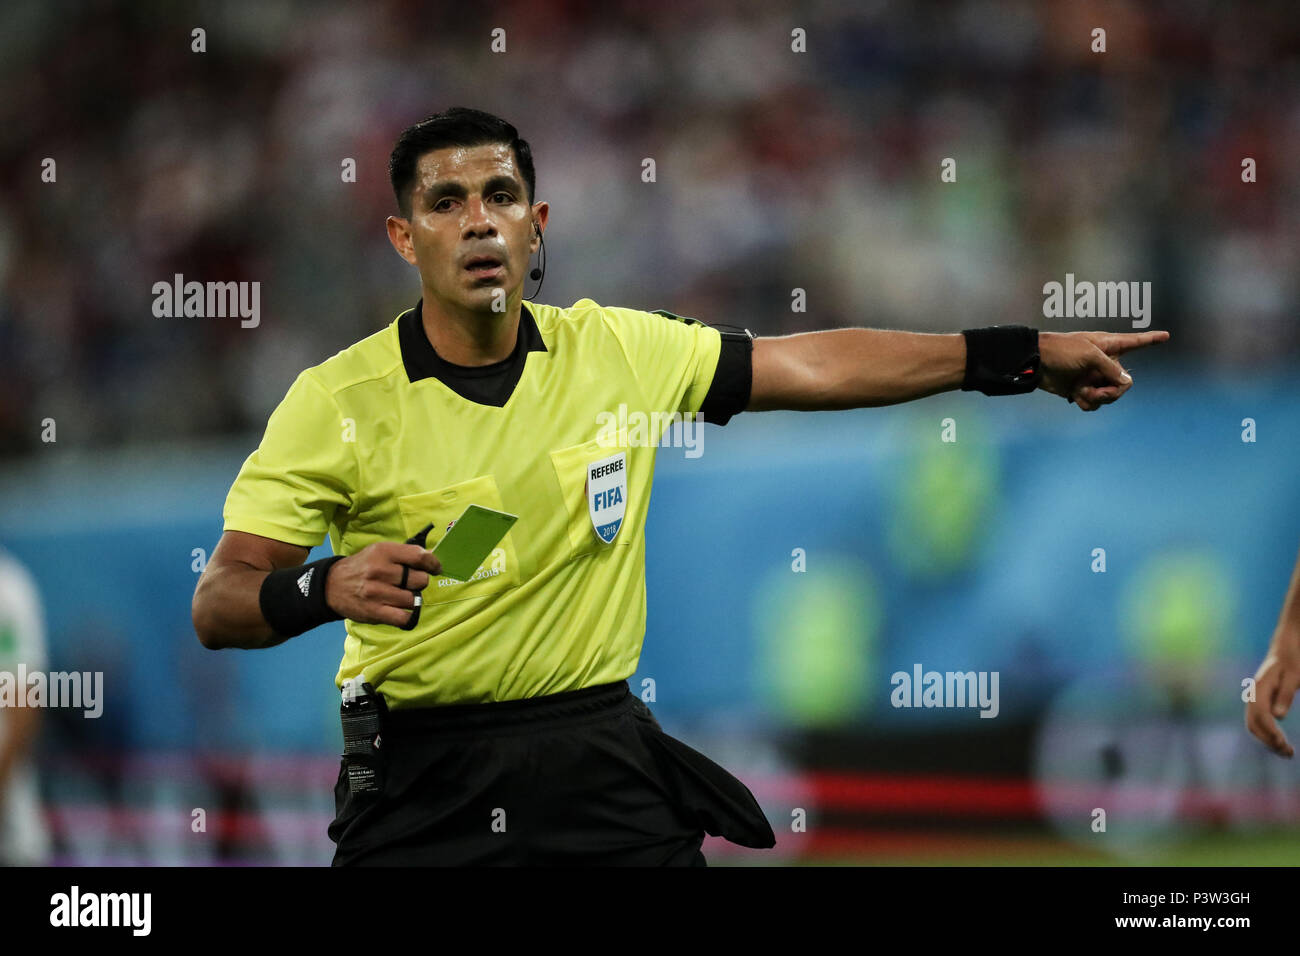 San Petersburgo, Rusia. 19 de junio de 2018. El árbitro Enrique Cáceres saca una tarjeta amarilla durante la Copa Mundial de la 2018 Grupo en un partido de fútbol entre Egipto